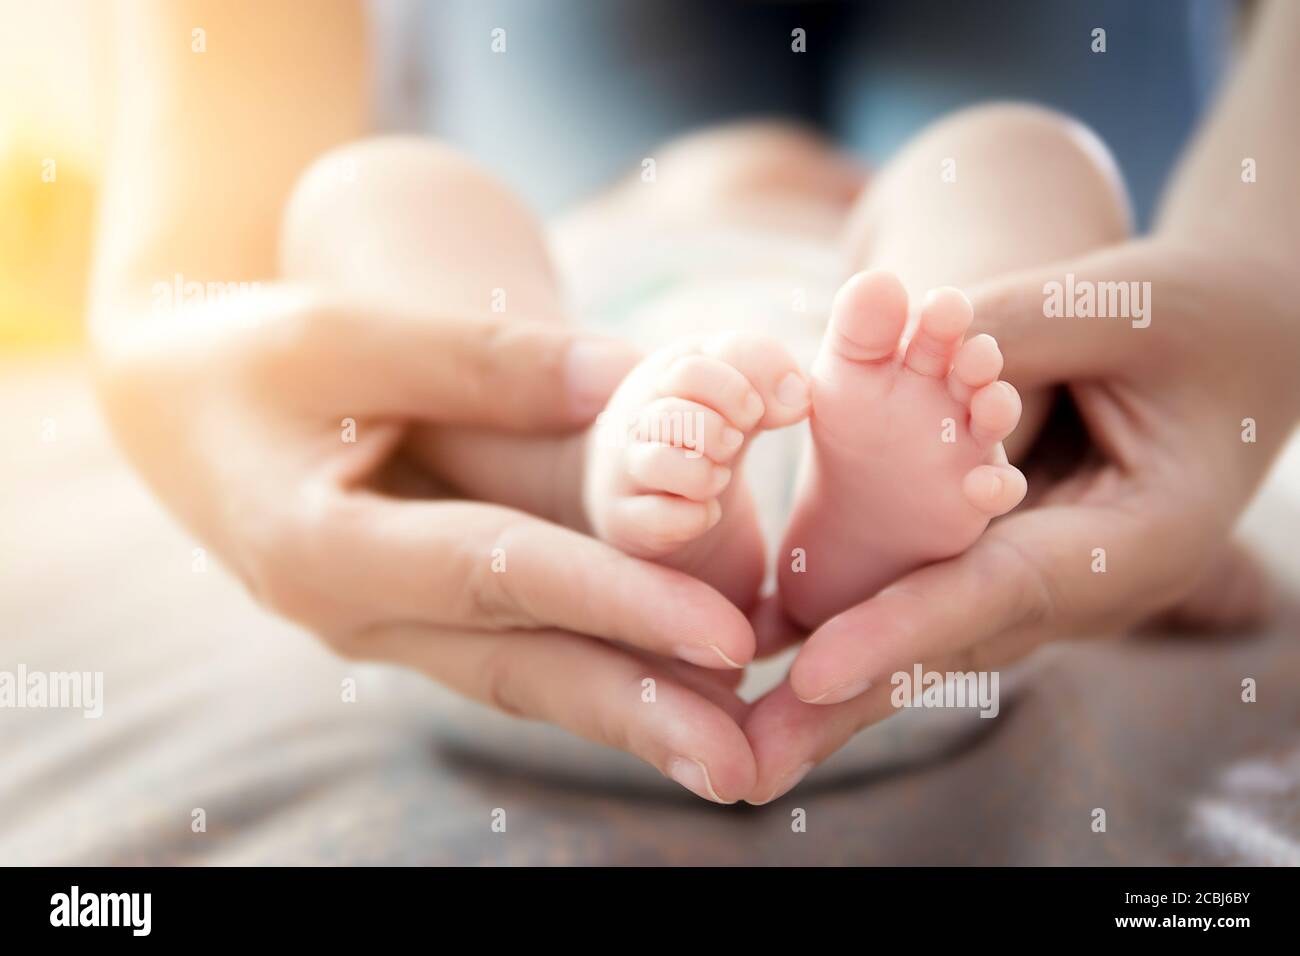 Relación feliz en concepto familiar : pies recién nacidos en manos de la madre. Padres sosteniendo pies diminutos de bebé recién nacido en las manos con cuidado suave Foto de stock